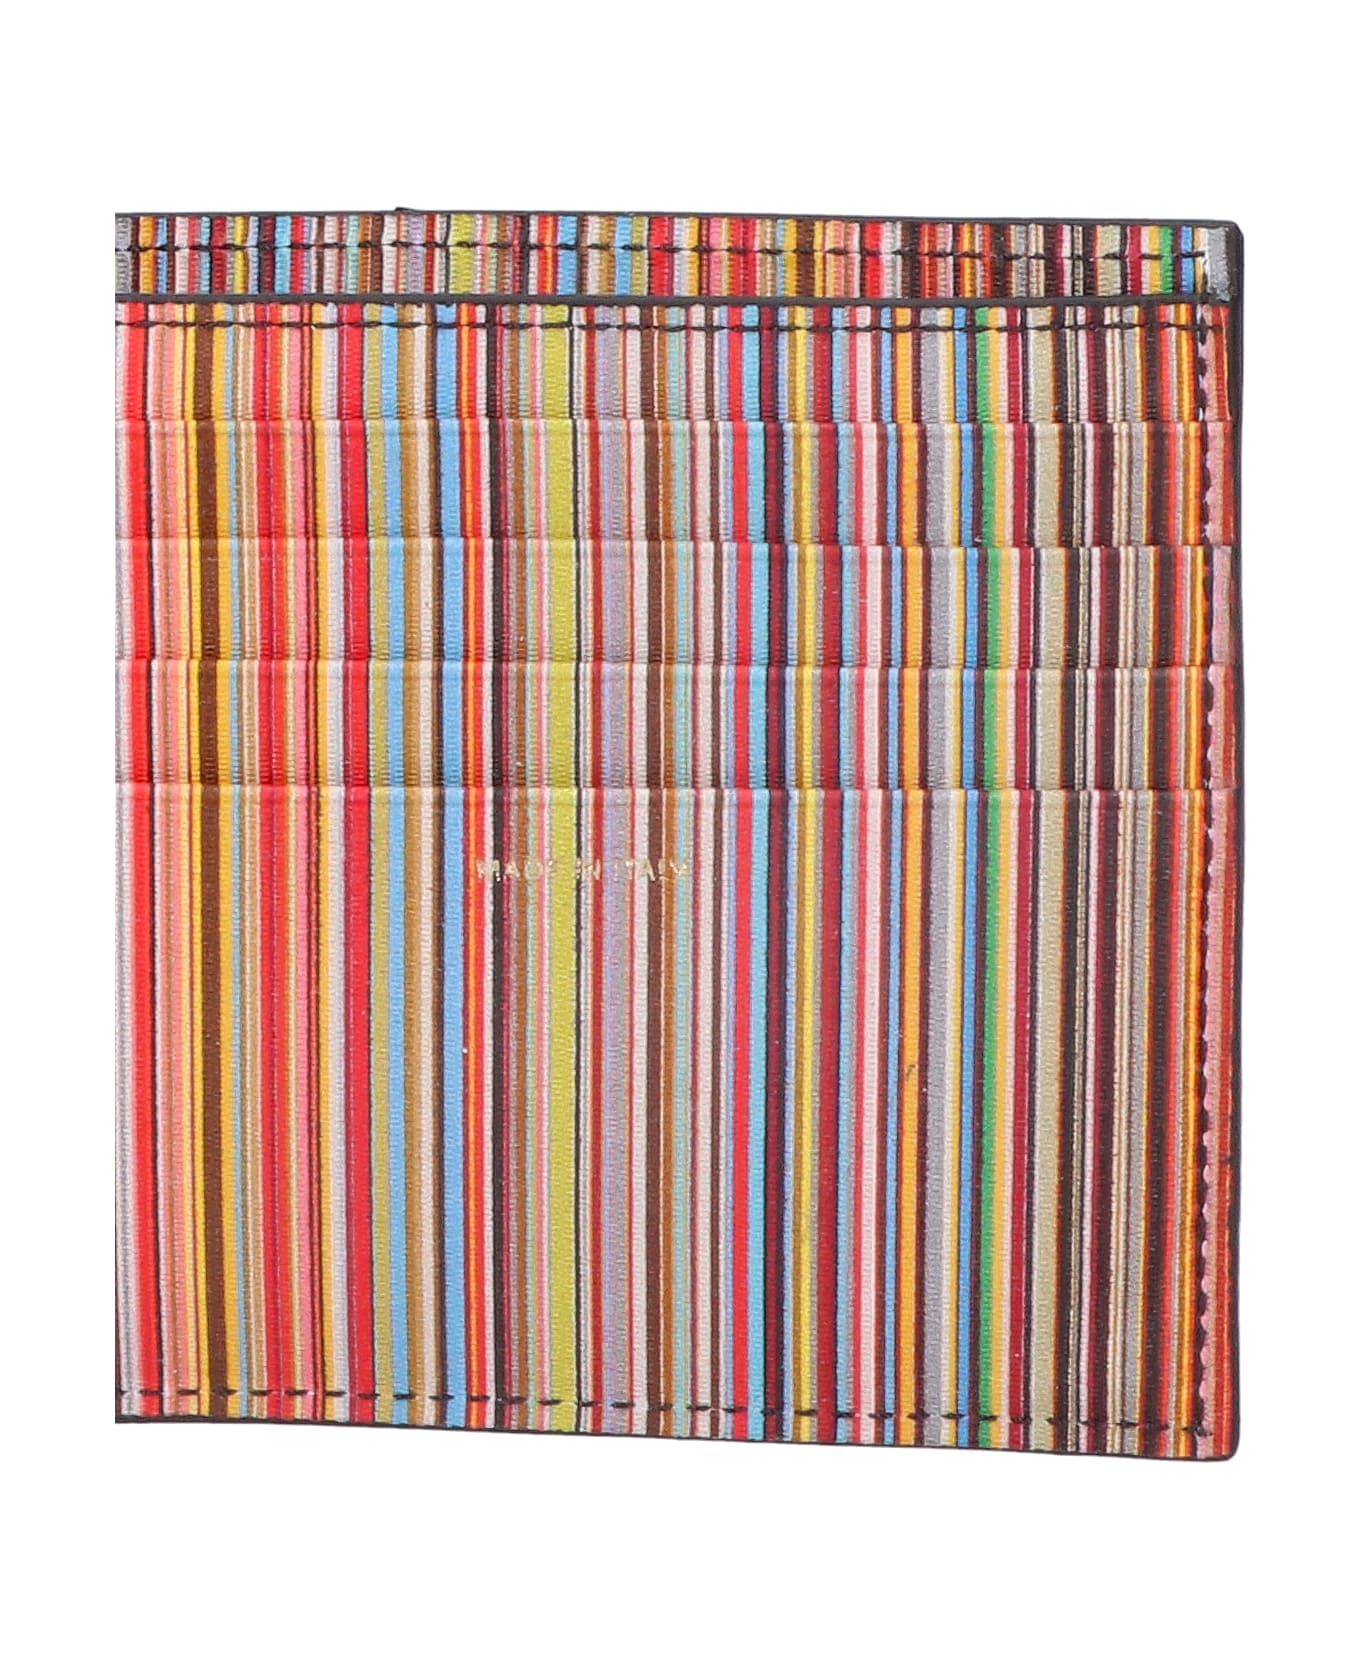 Paul Smith 'signature Stripe' Wallet - Nero